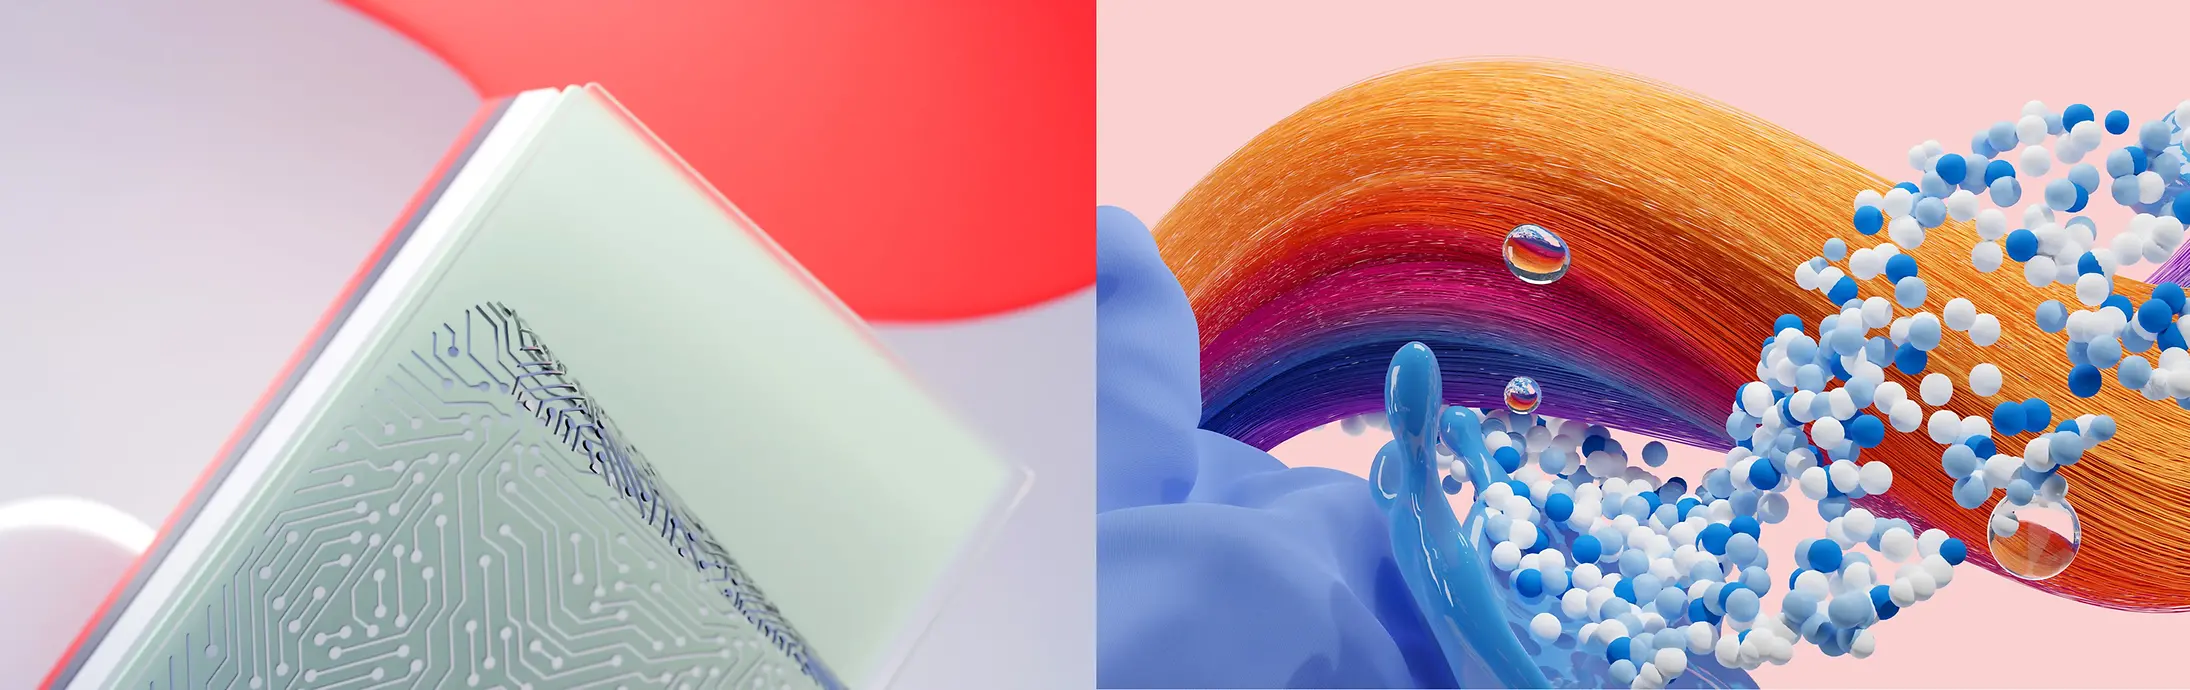 Abstraktes Bild das die Henkel Unternehmensbereiche Adhesive Technologies und Consumer Brands (Hair und Laundry & Home Care) repräsentiert.